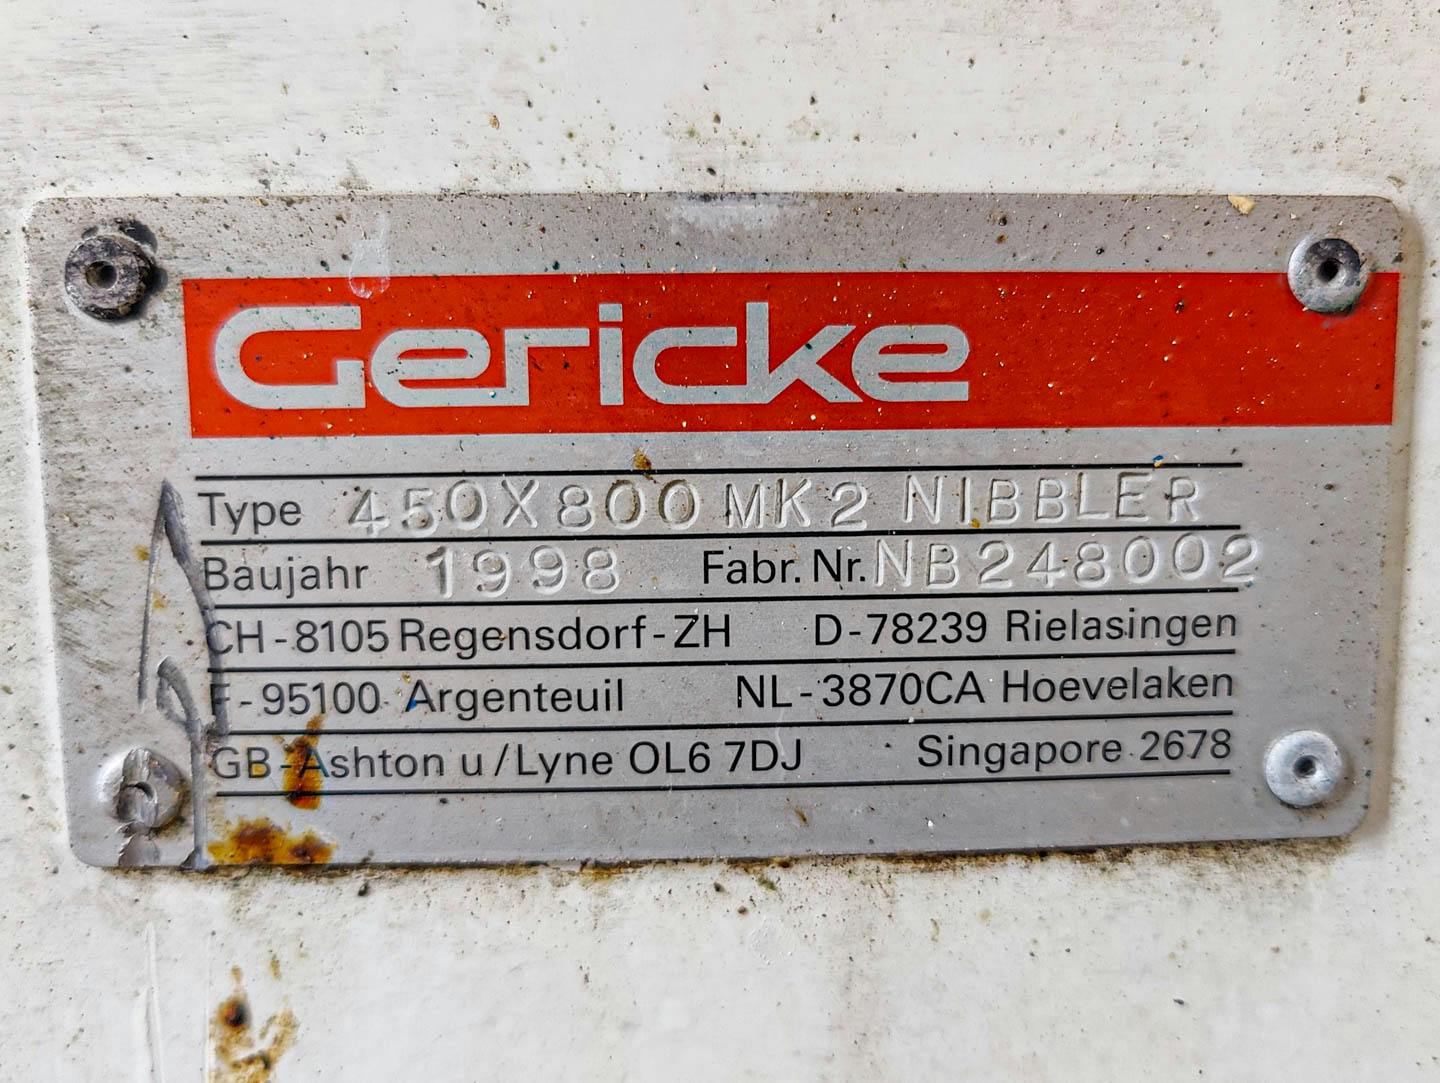 Gericke 450x800 MK2 NIBBLER - Doorwrijfzeef - image 11